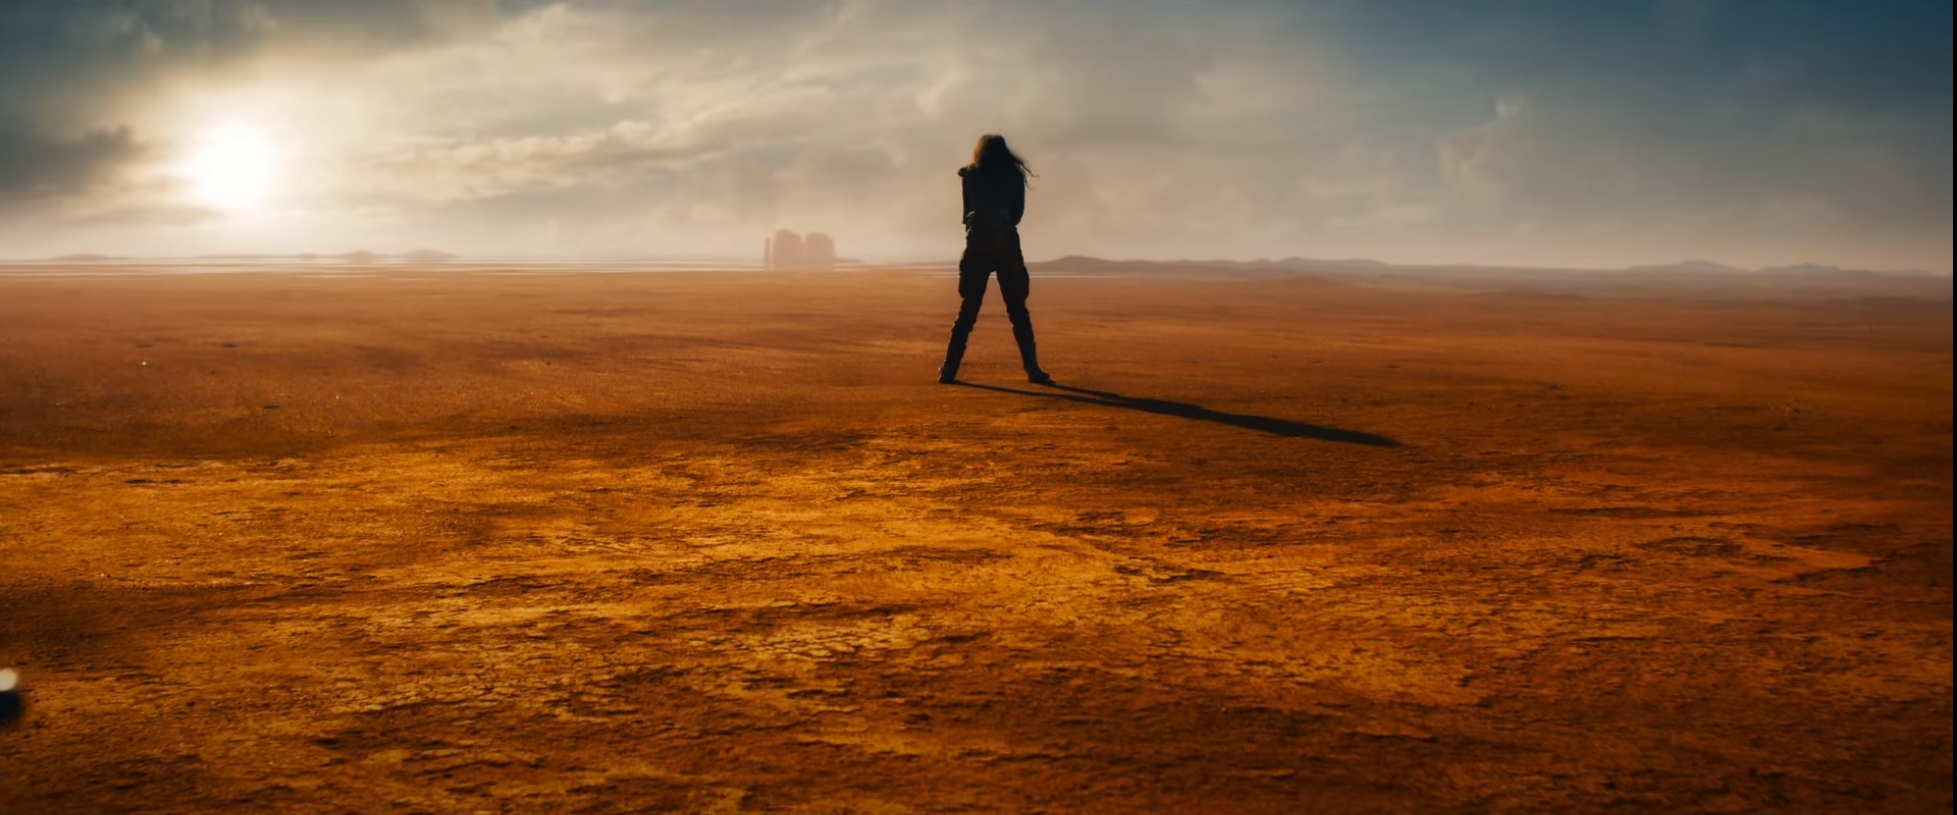 Tout vient à point à qui sait attendre : voici la bande-annonce de Furiosa, le spin-off tant attendu de Mad Max